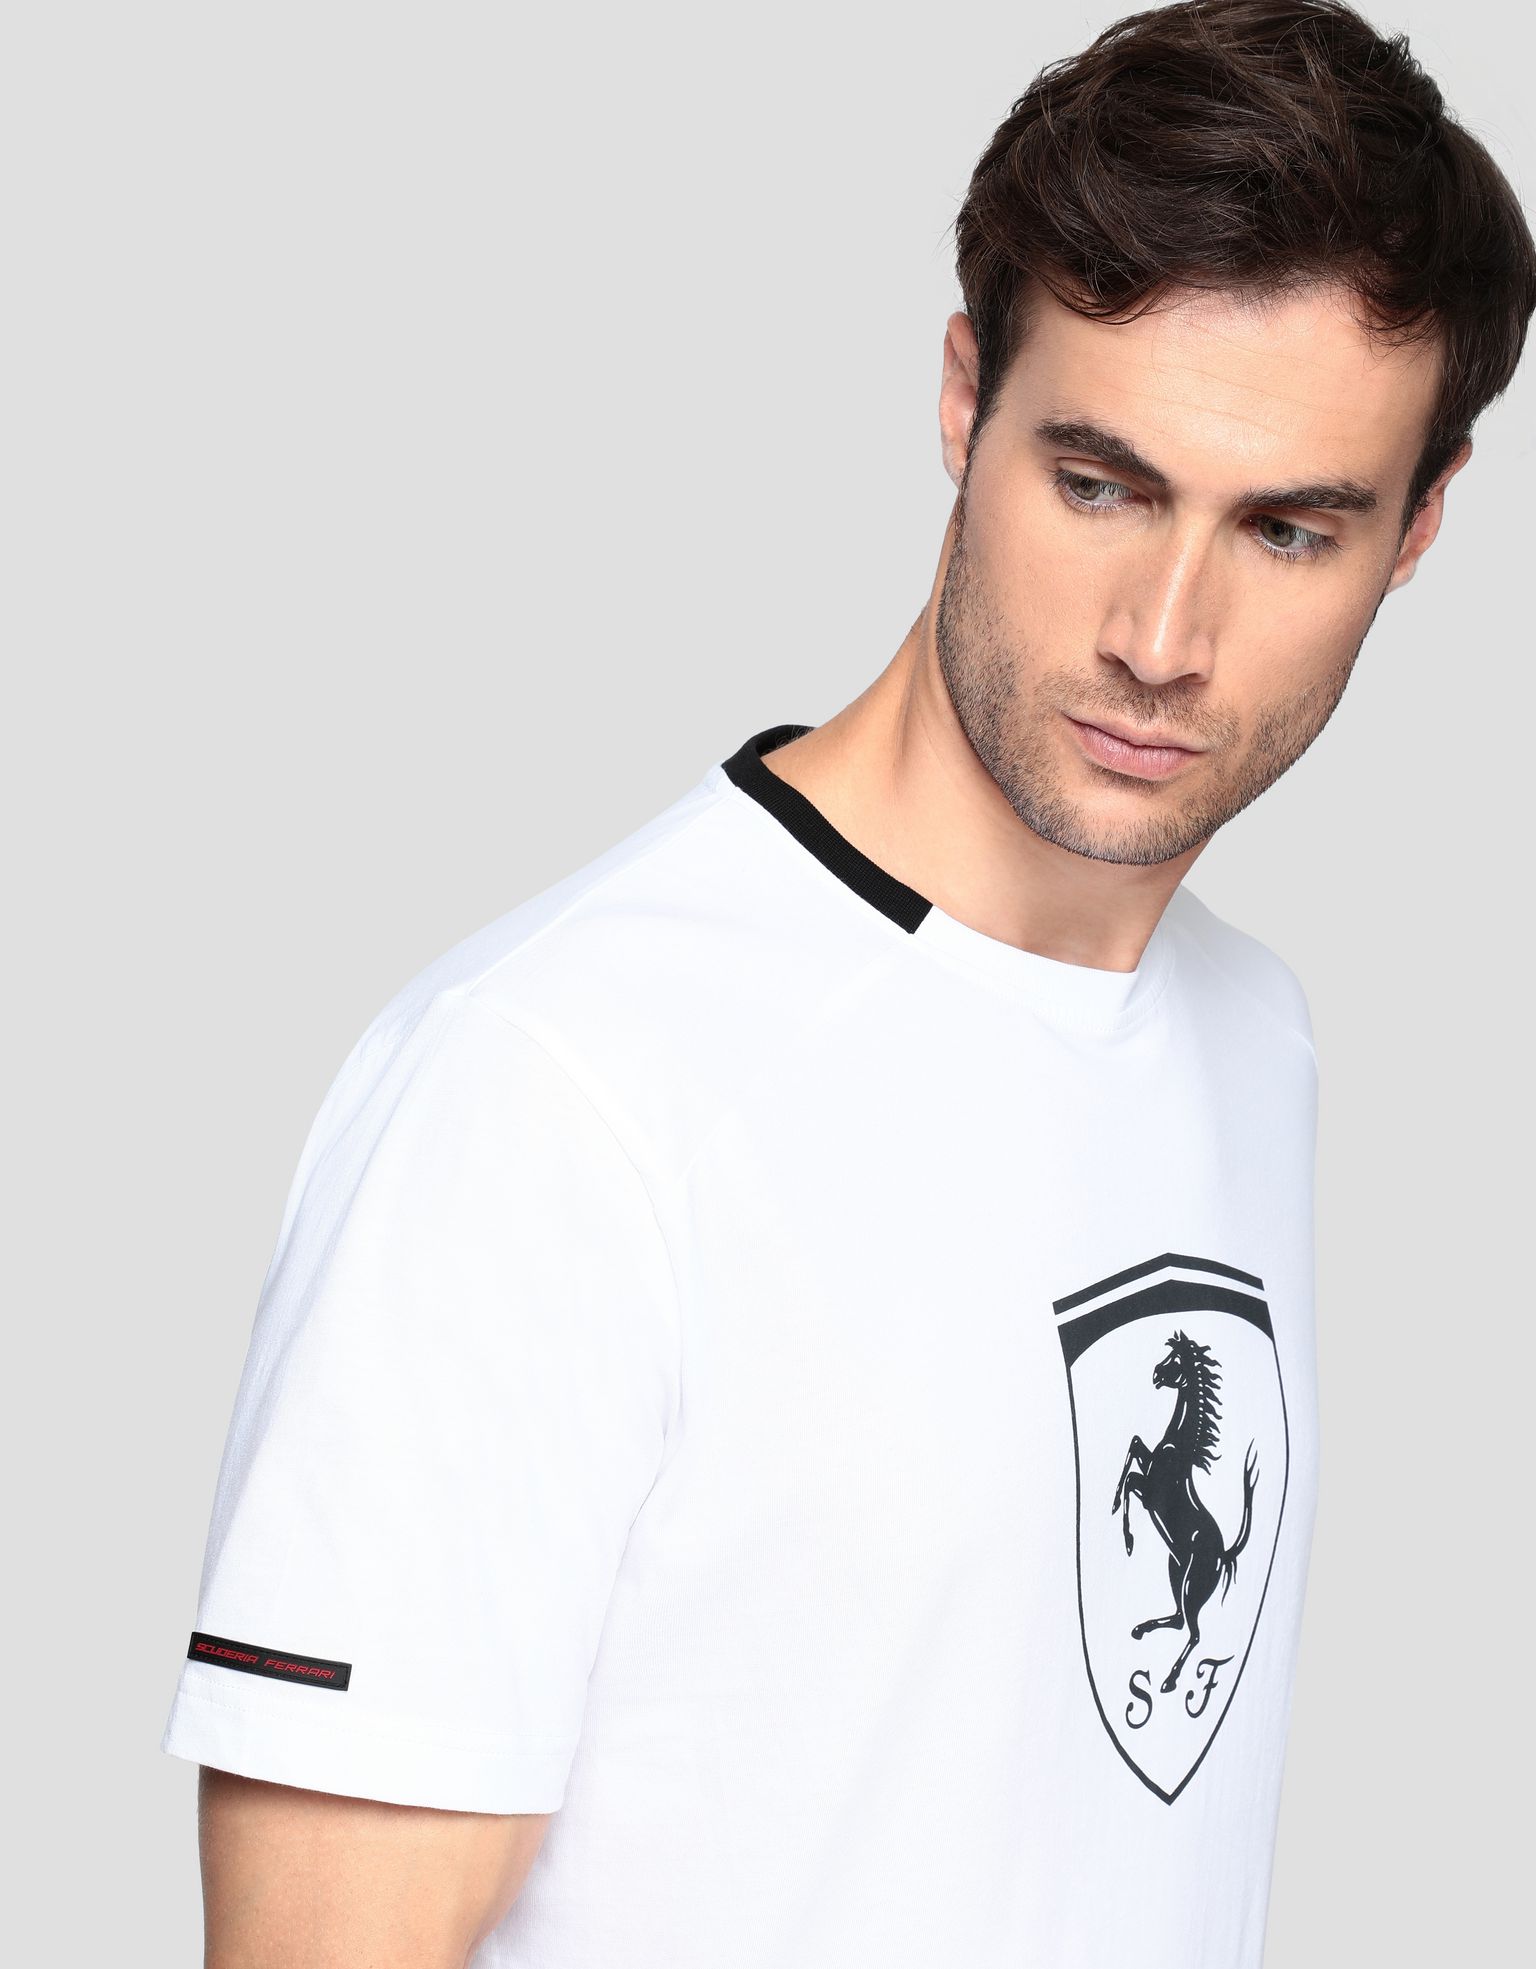 Ferrari Men’s cotton T-shirt with Ferrari Shield Man | Scuderia Ferrari ...